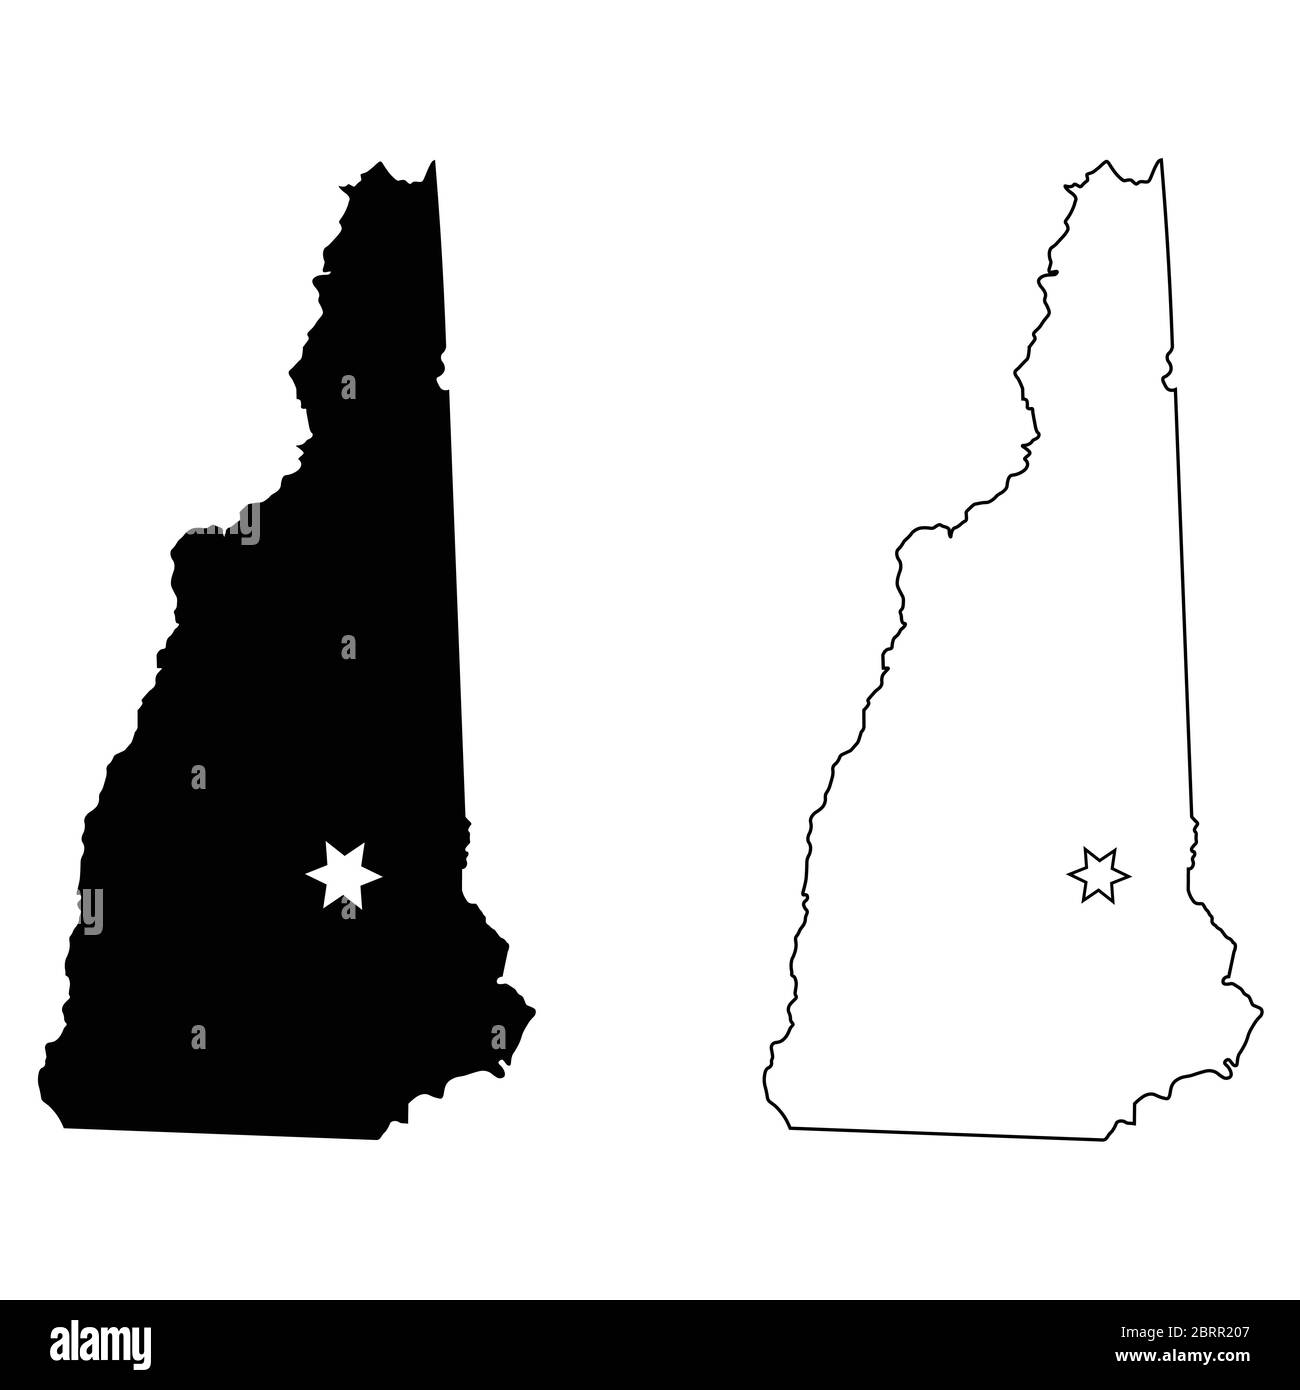 New Hampshire NH State Map USA avec Capital City Star à Concord. Silhouette et contour noirs isolés sur fond blanc. Vecteur EPS Illustration de Vecteur